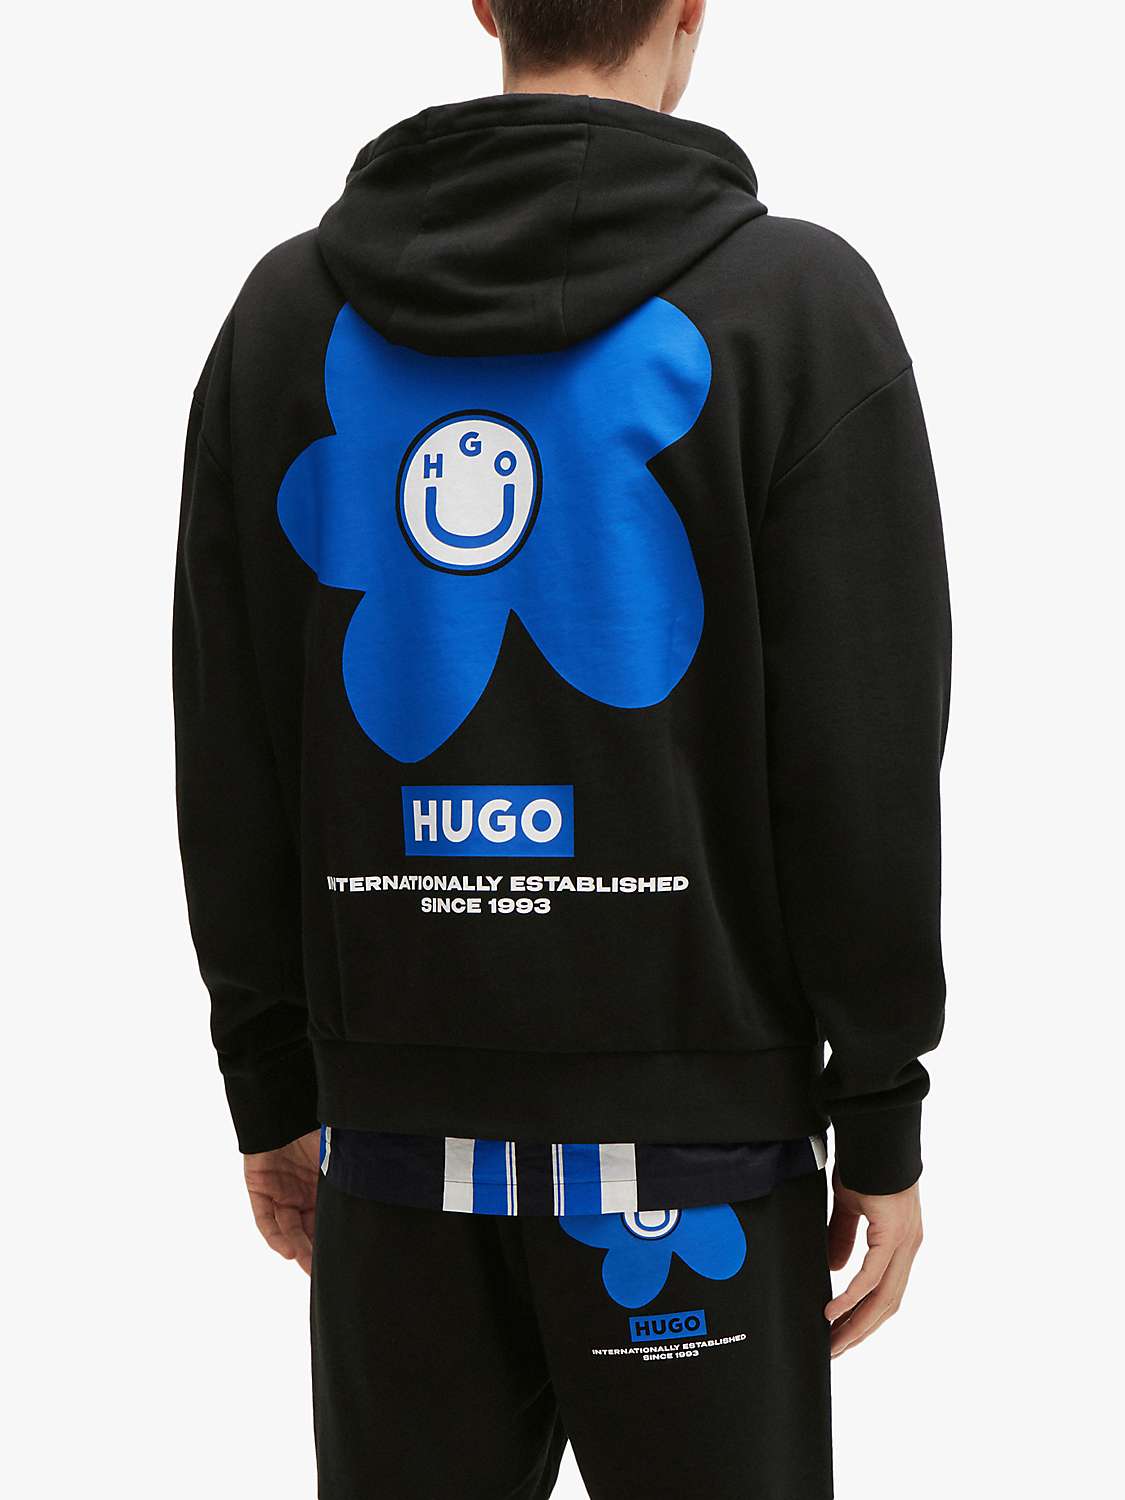 Buy HUGO Nolumbine 001 Hoodie, Black/Blue Online at johnlewis.com